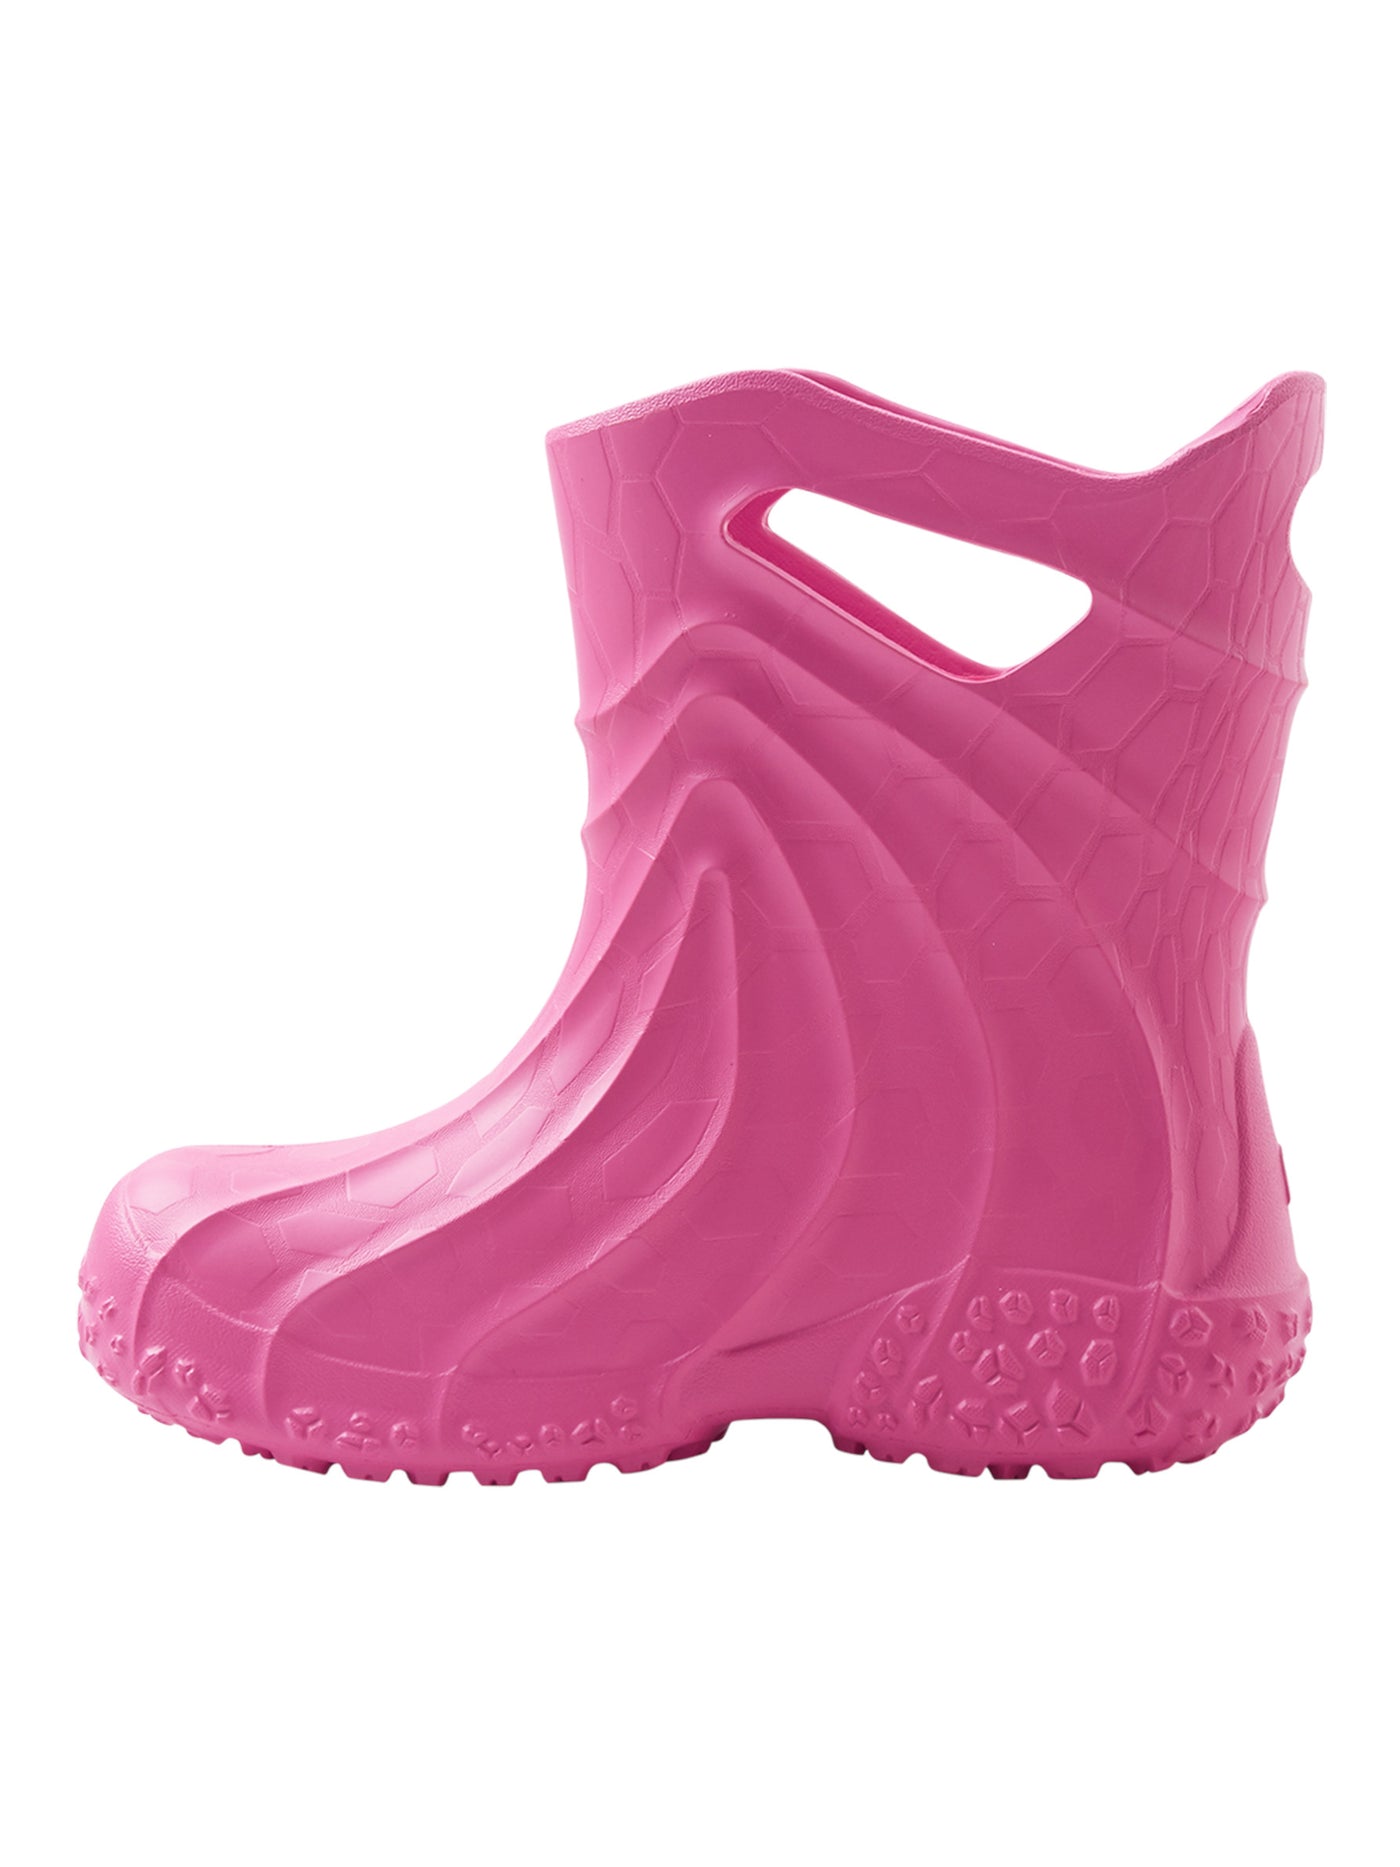 Amfibi Rain Boots - Children's light rubber boots